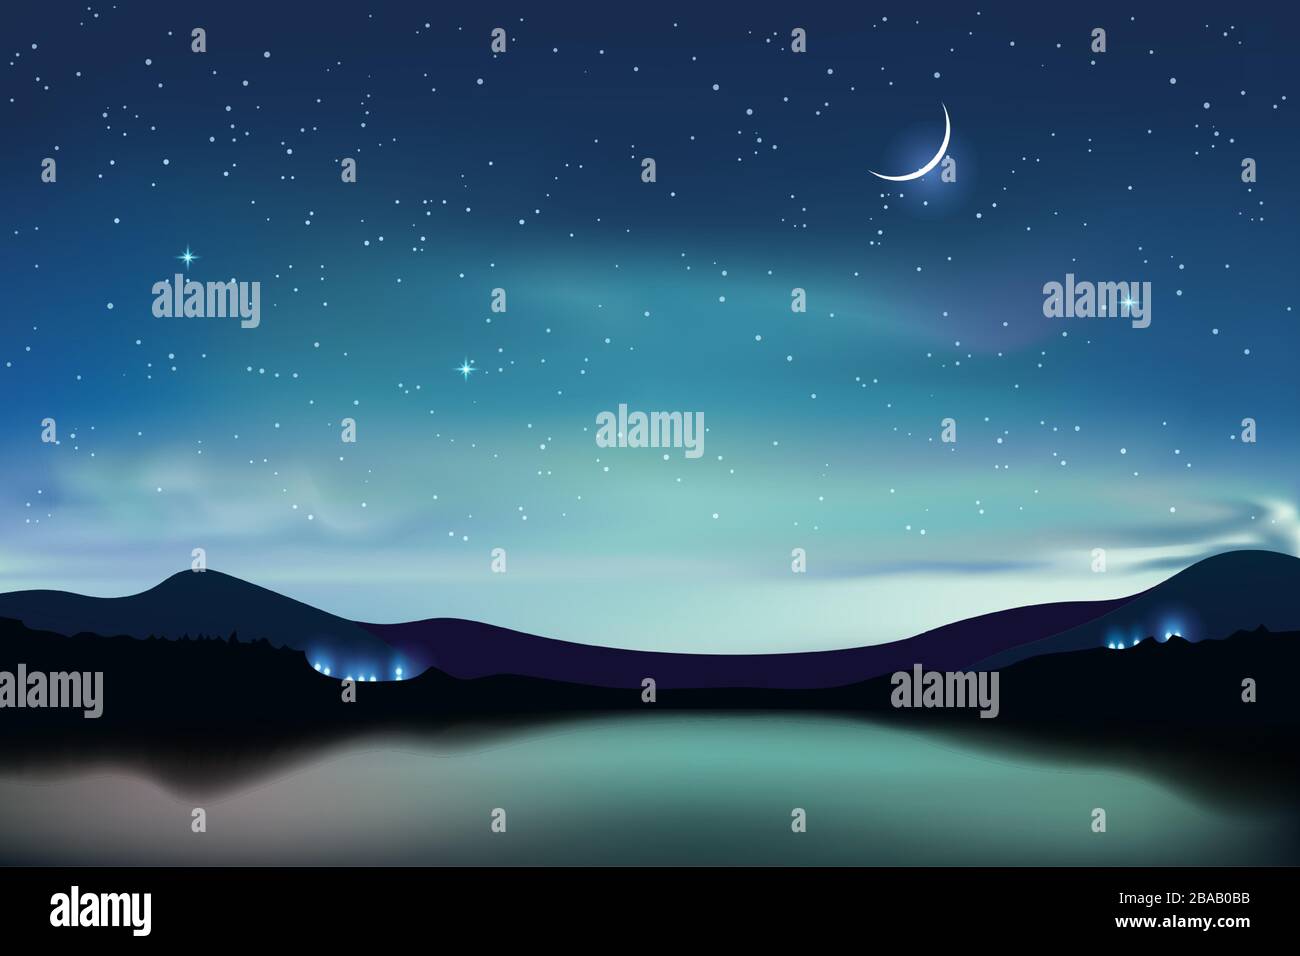 Lago di montagna con cielo stellato turchese scuro e una luna crescente, cielo notturno sfondo realistico, illustrazione vettoriale. Illustrazione Vettoriale